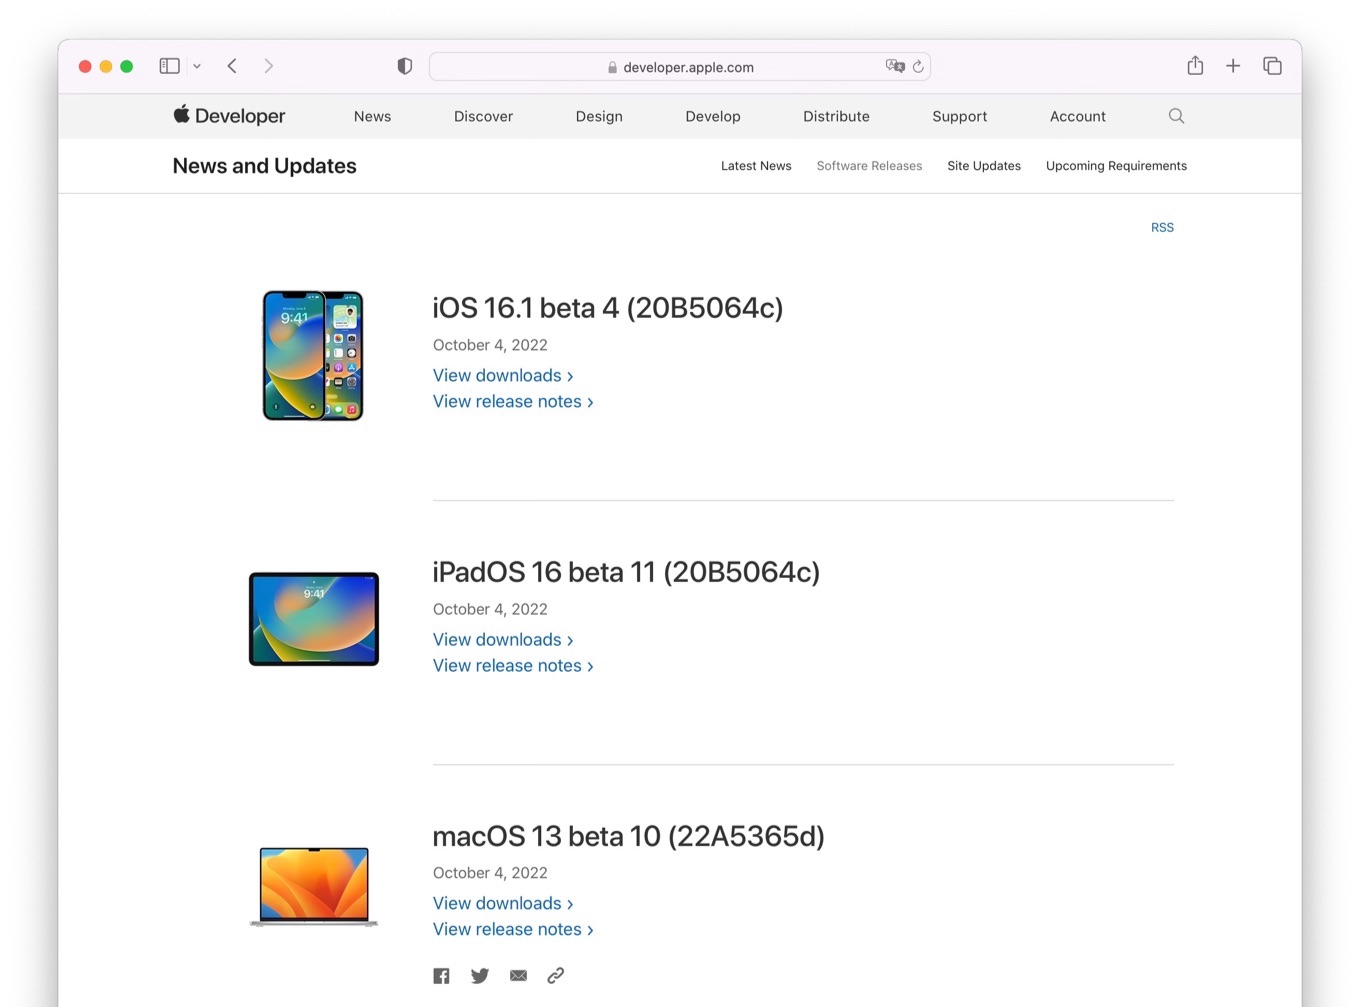 macOS 13 Ventura beta 10 build 22A5365d update